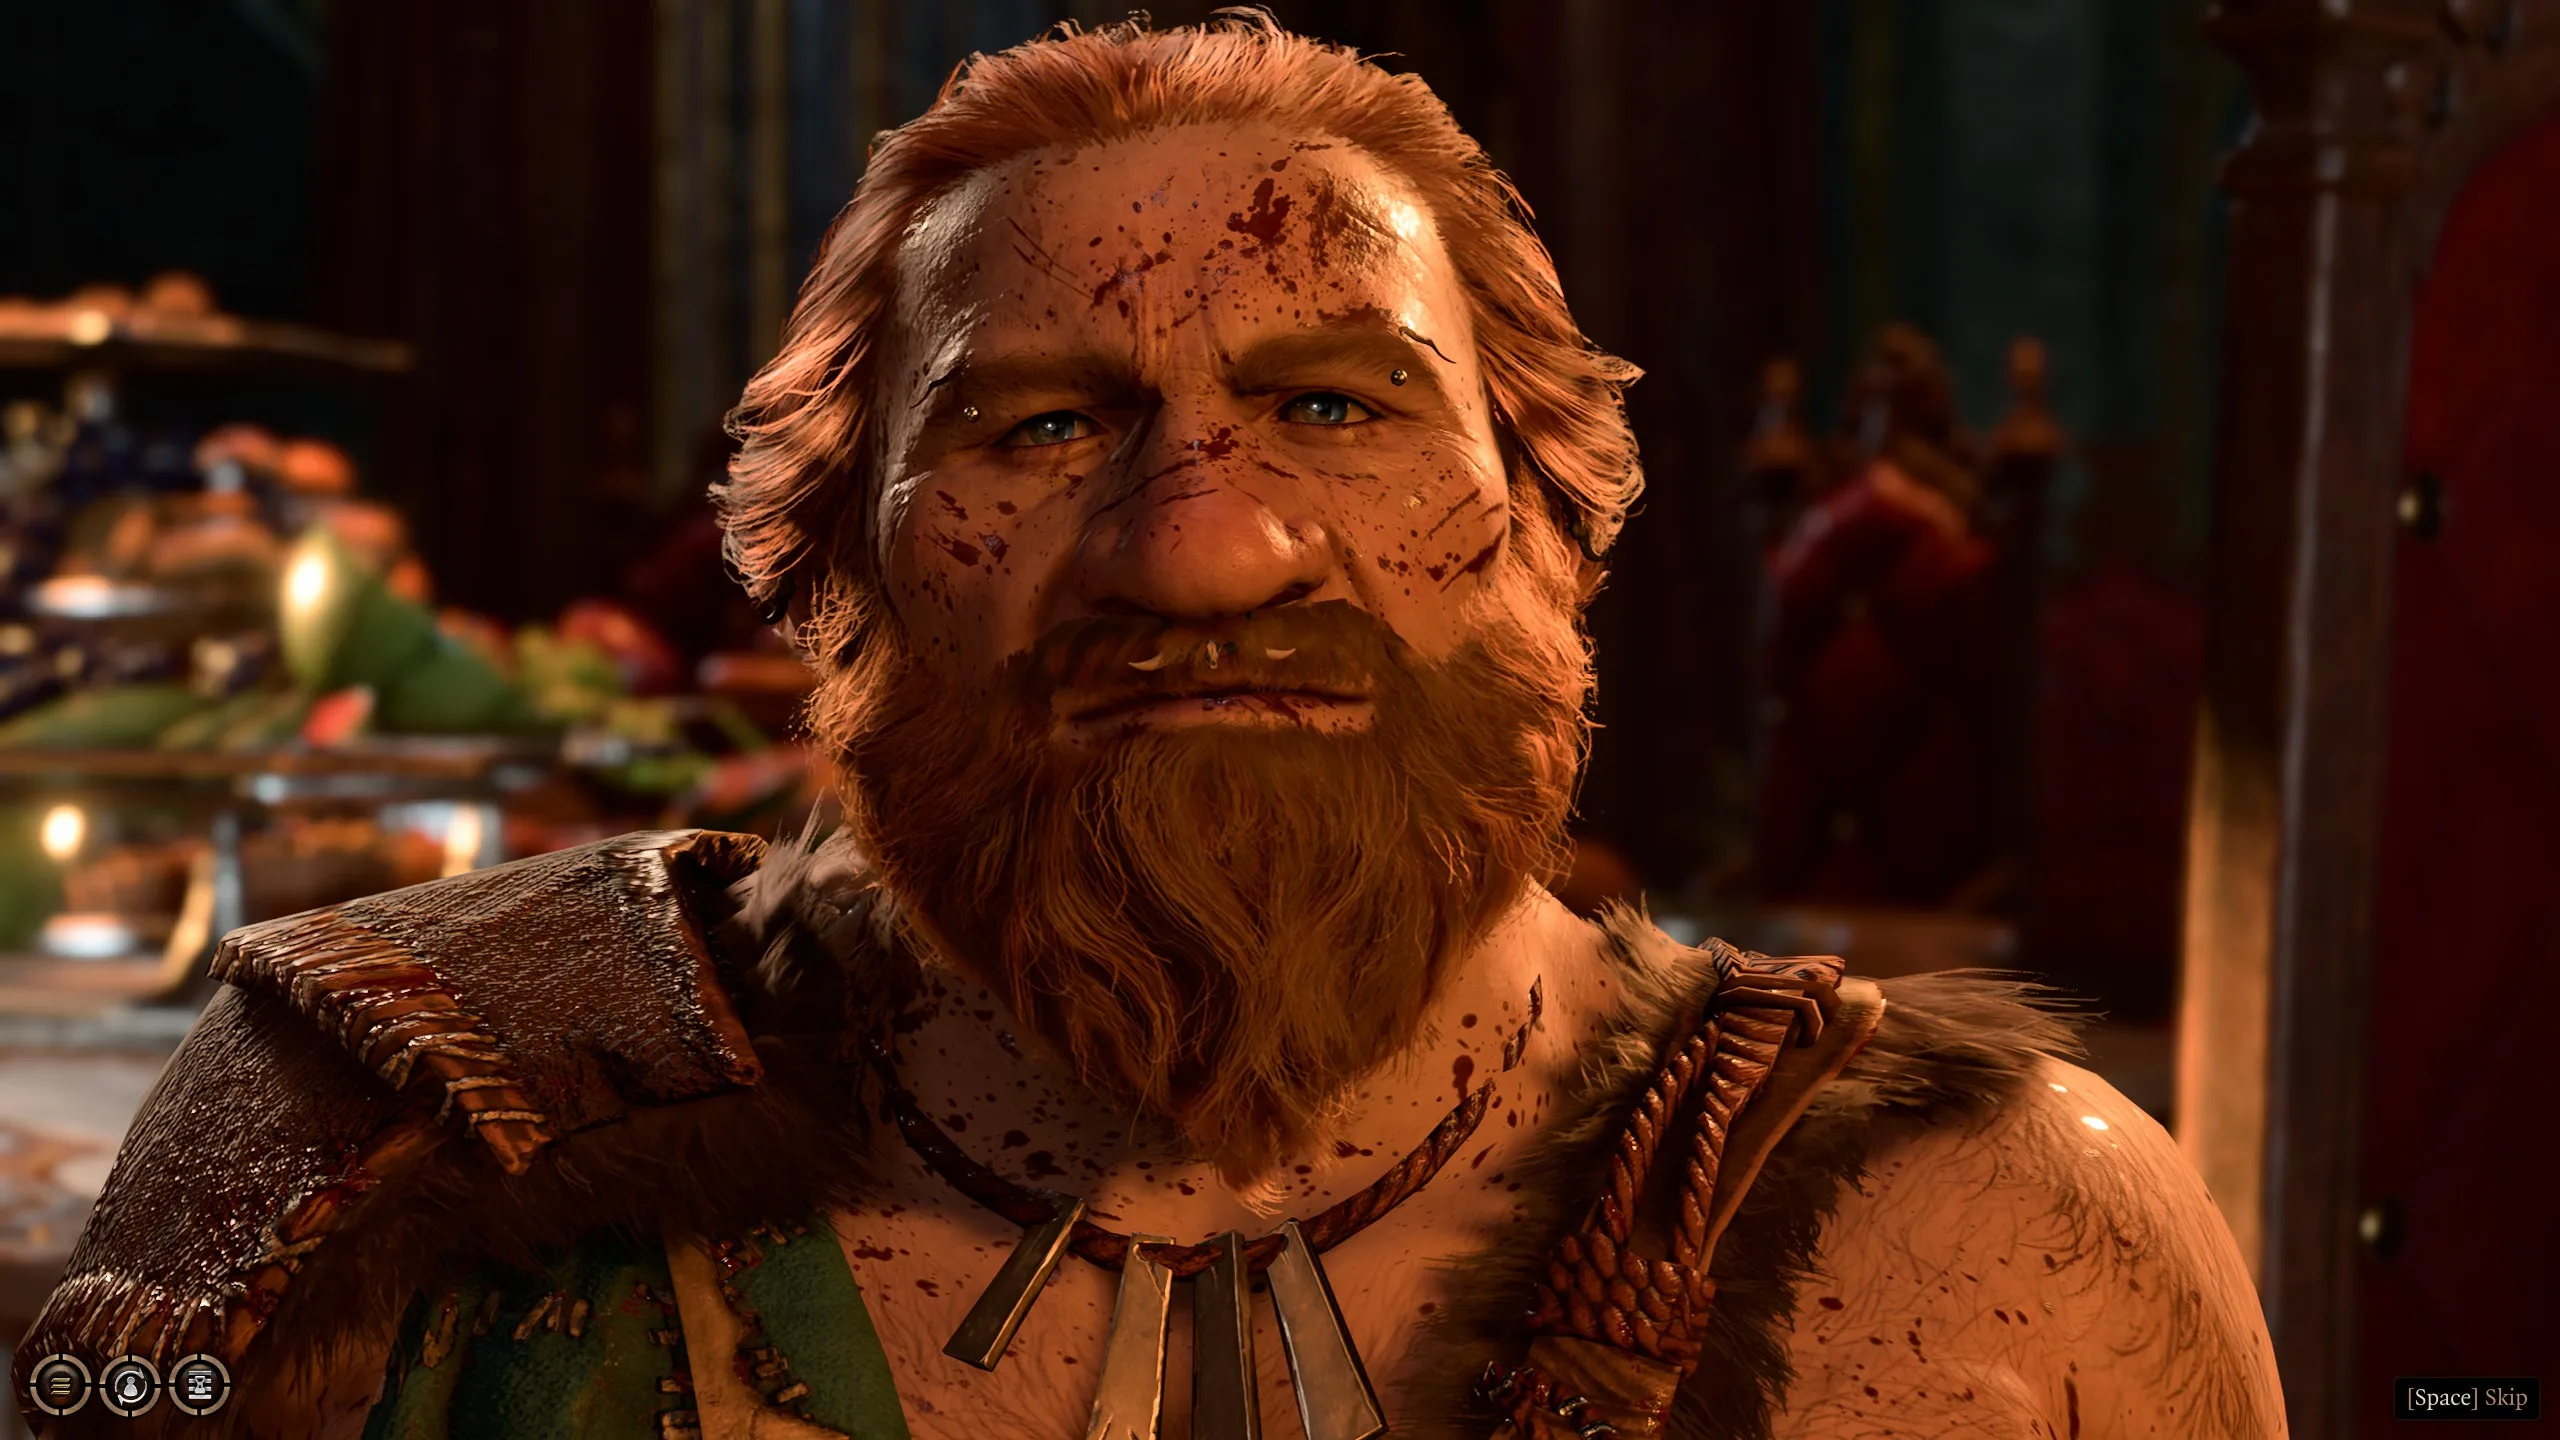 Dwarf Barbarian faceshot from cutscene in Baldur’s Gate 3